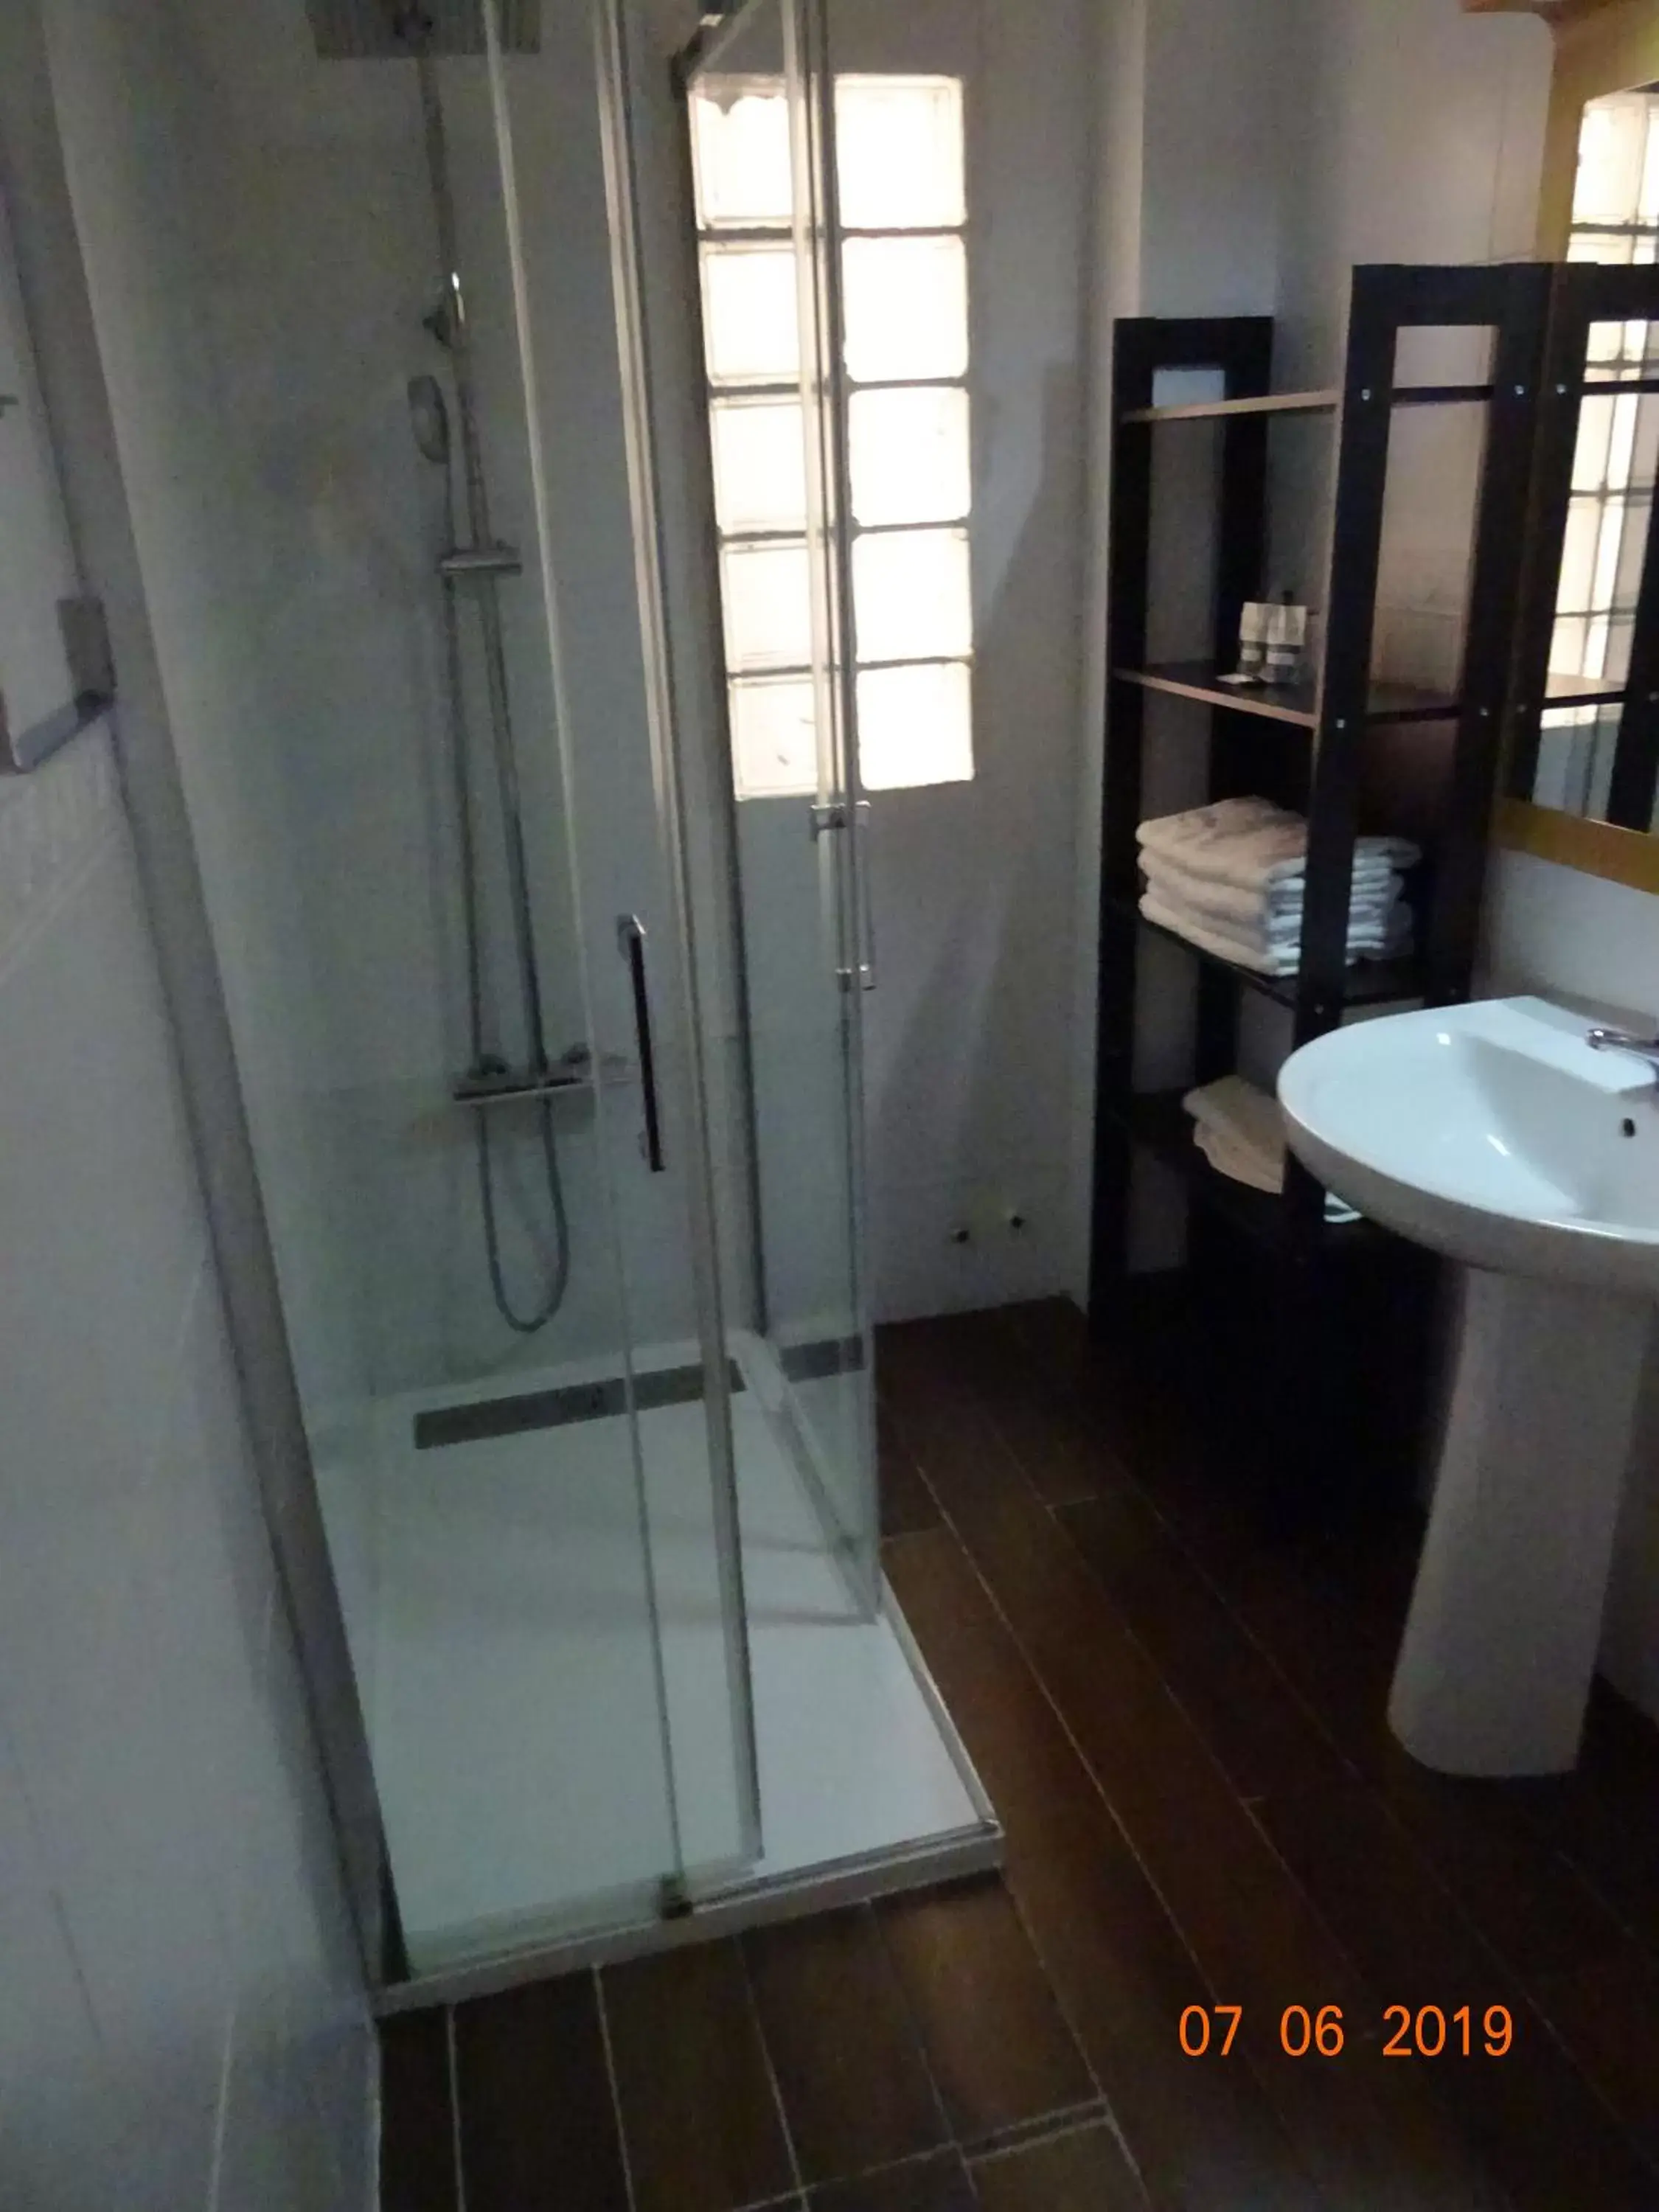 Bathroom in Hotel Carlos III